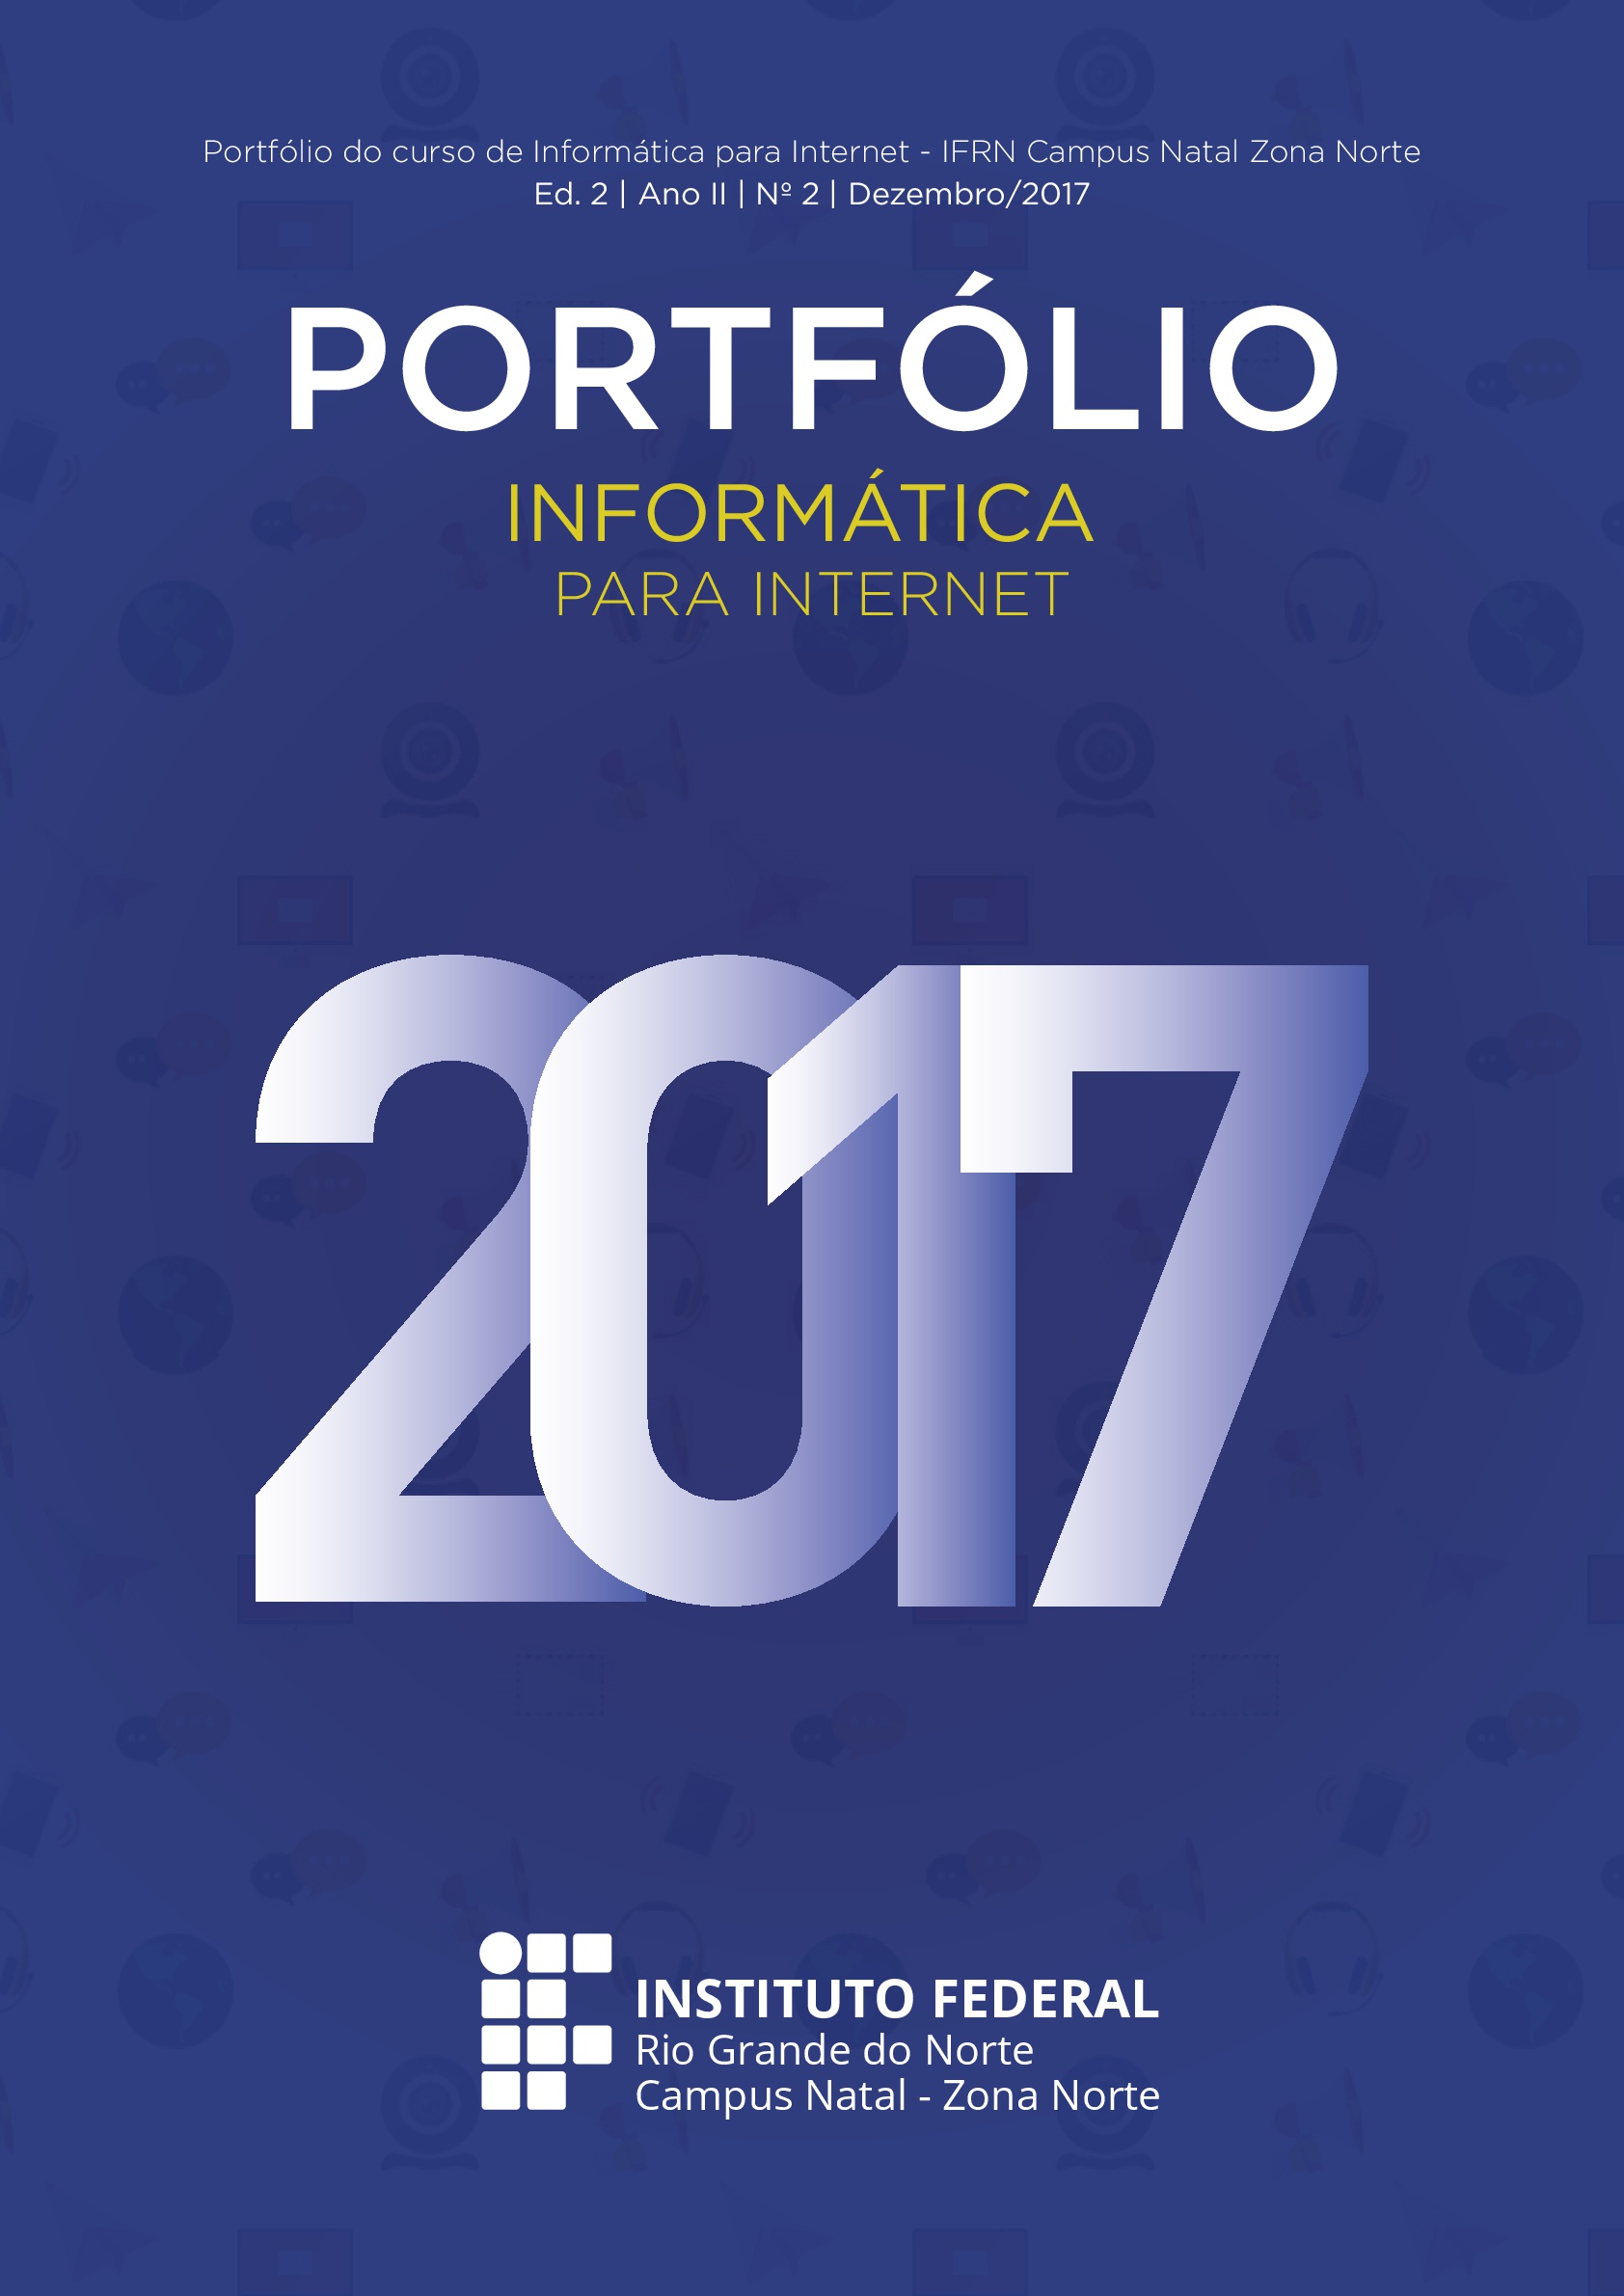 					Visualizar 2017: Portfólio Informática 2017
				